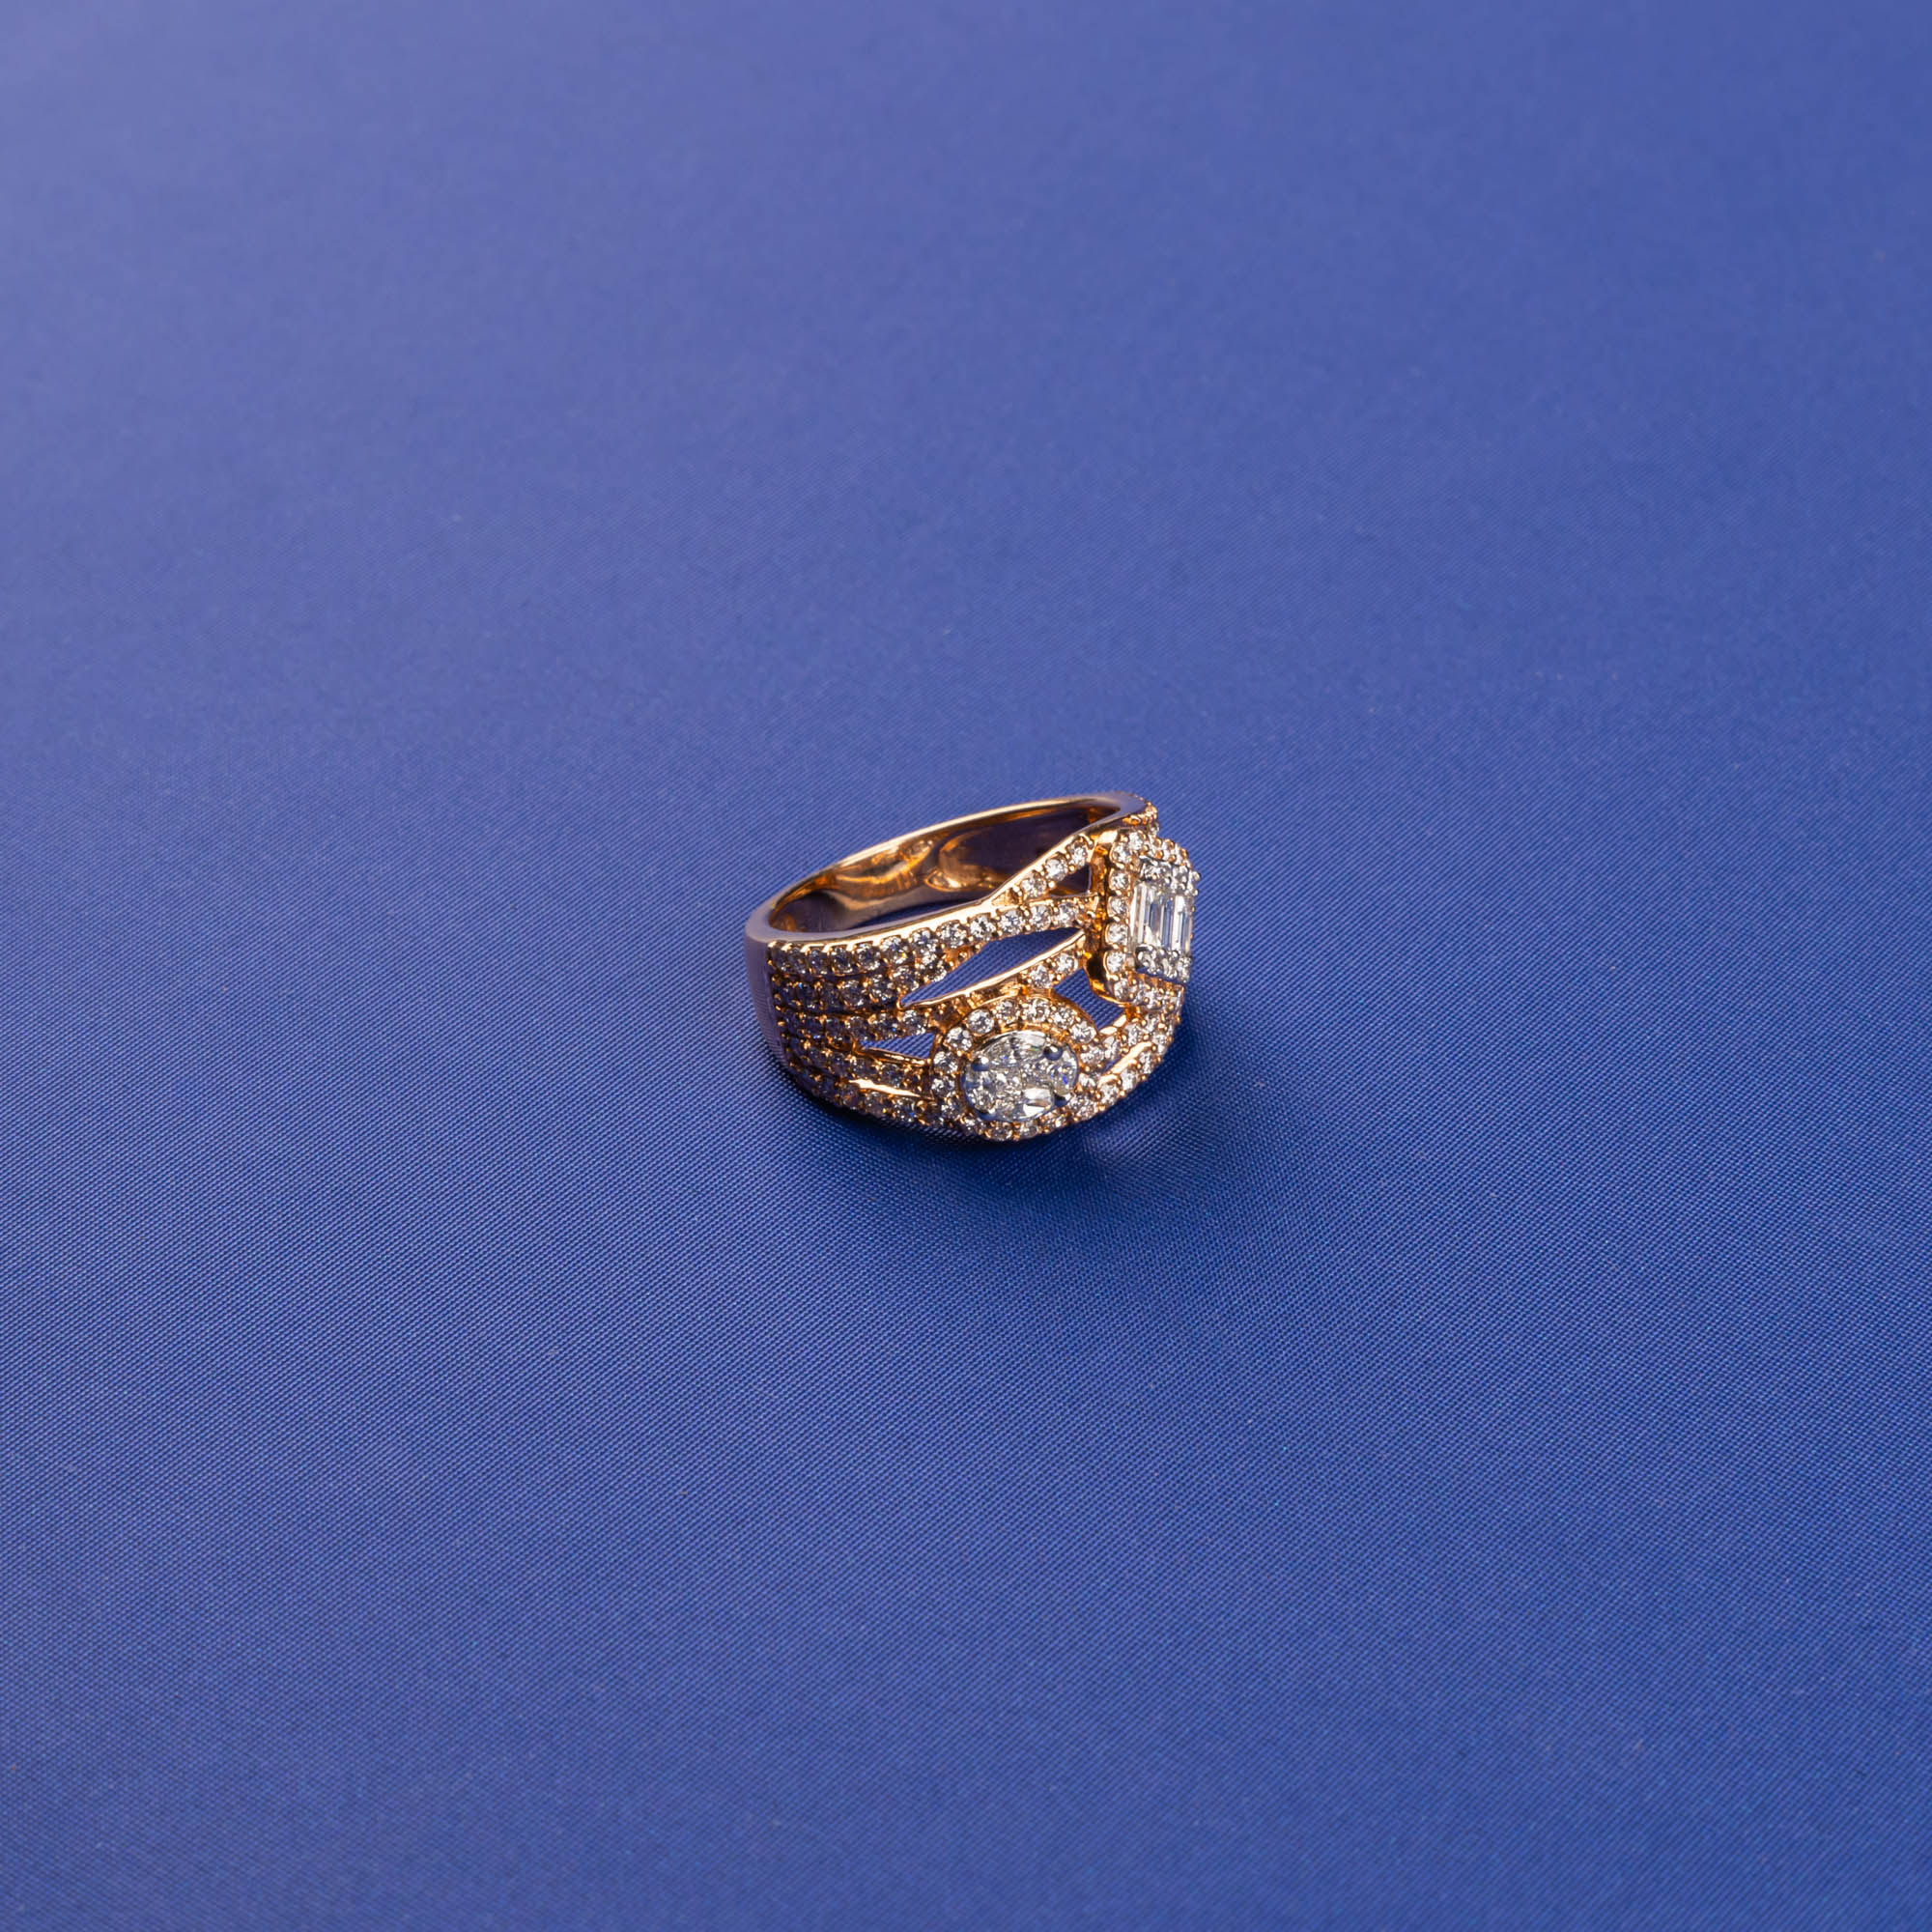 Illuminating Beauty: Handmade 18K Yellow/White Gold Diamond Ring